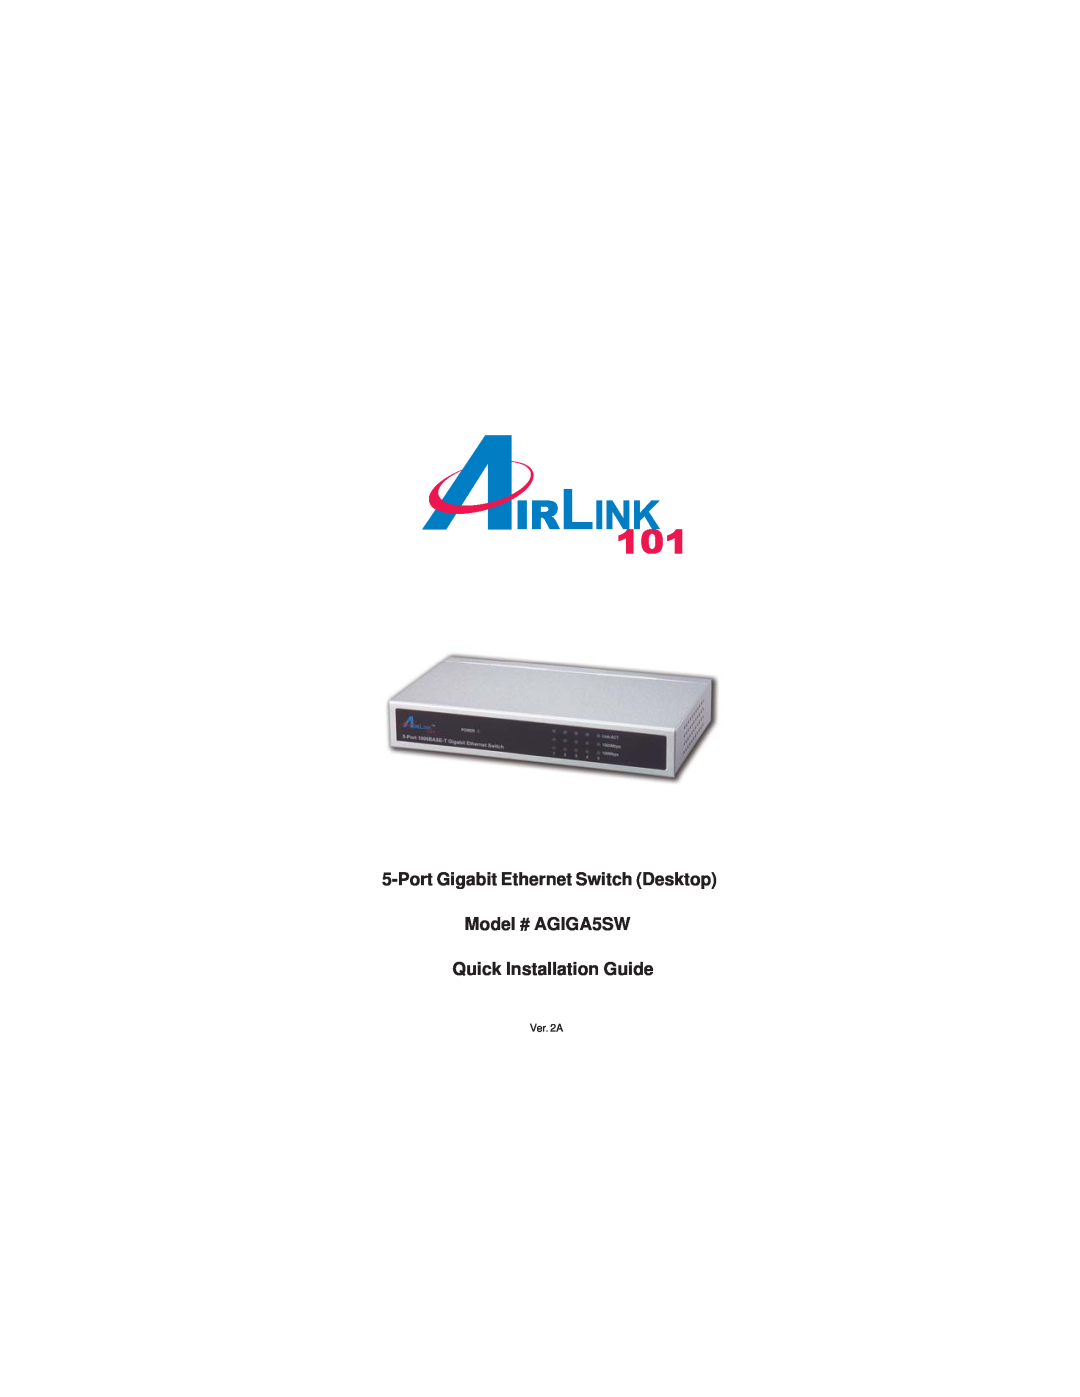 Airlink101 manual Port Gigabit Ethernet Switch Desktop Model # AGIGA5SW, Quick Installation Guide, AirLink101 